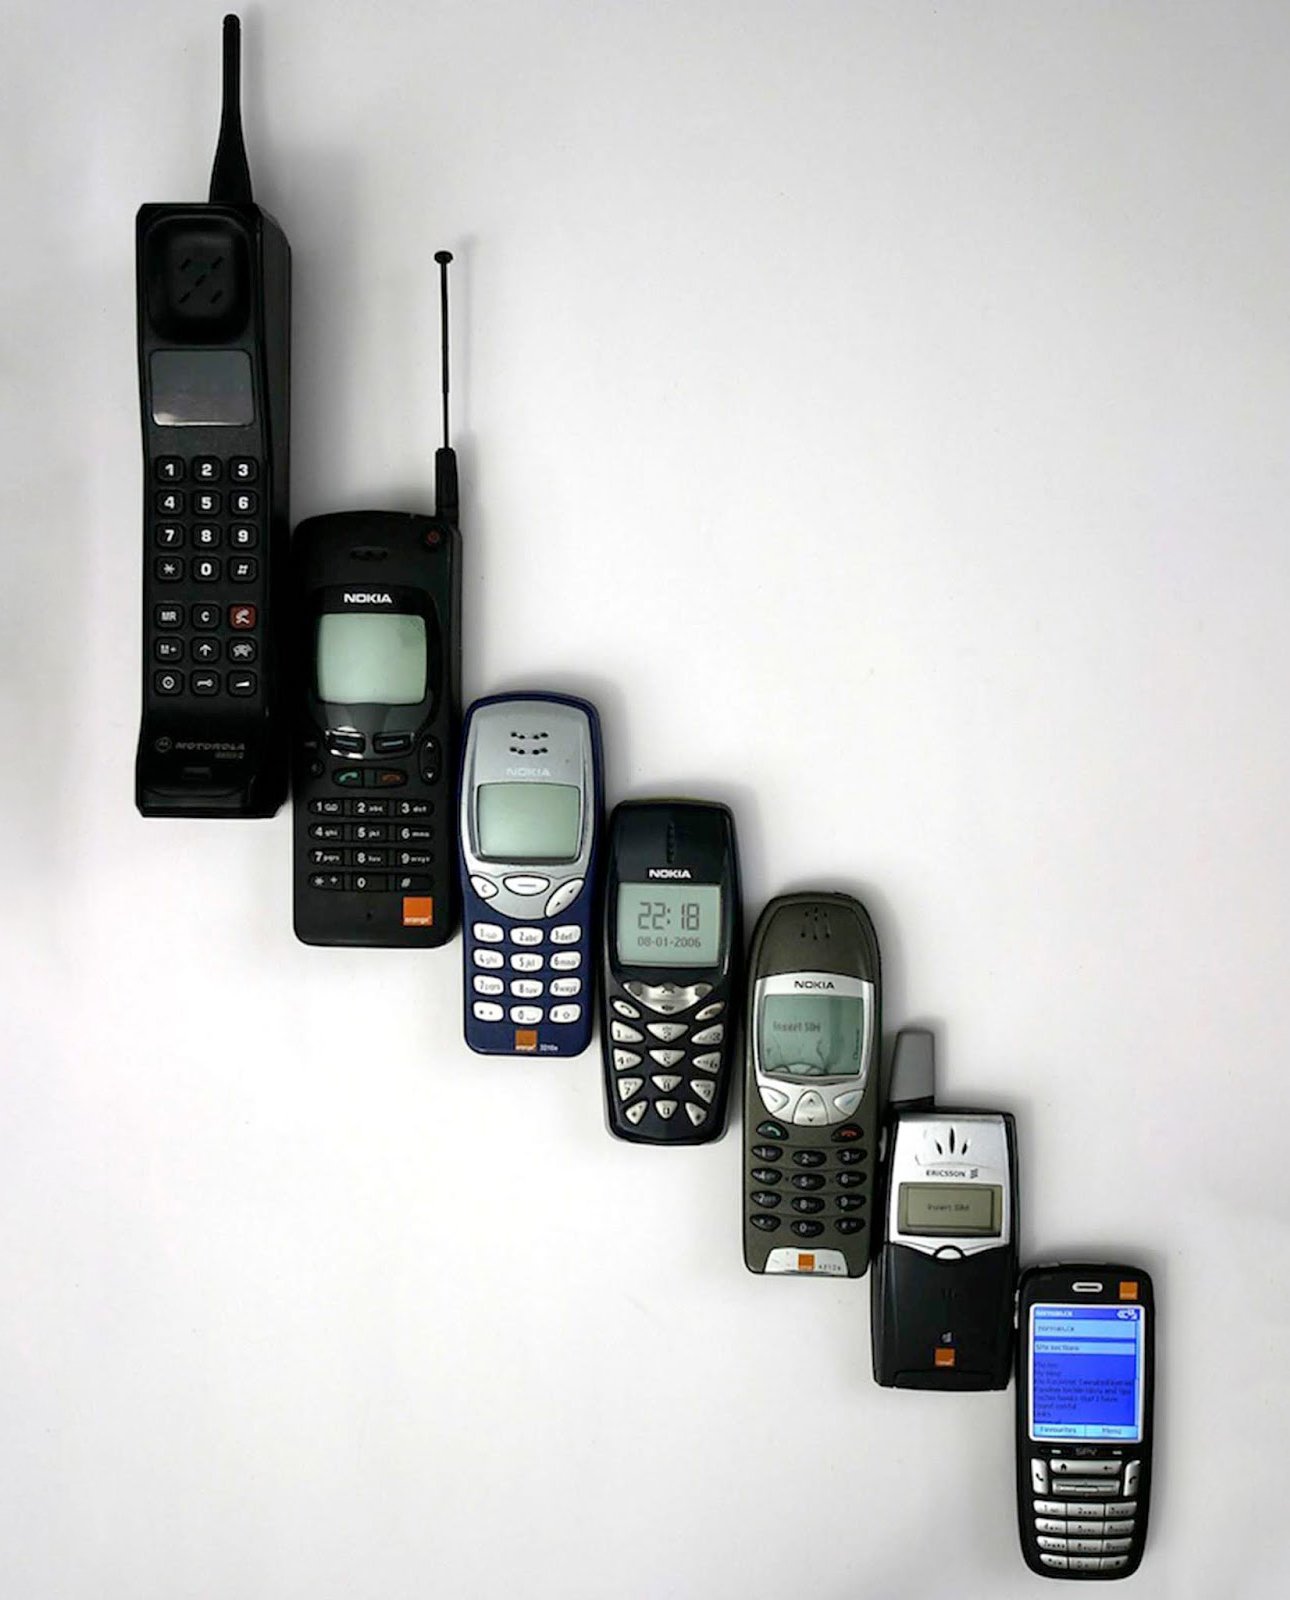 Modelos de celulares comuns entre os anos 1970 e 1990. (Fonte: Rare Historical Photos / Reprodução)